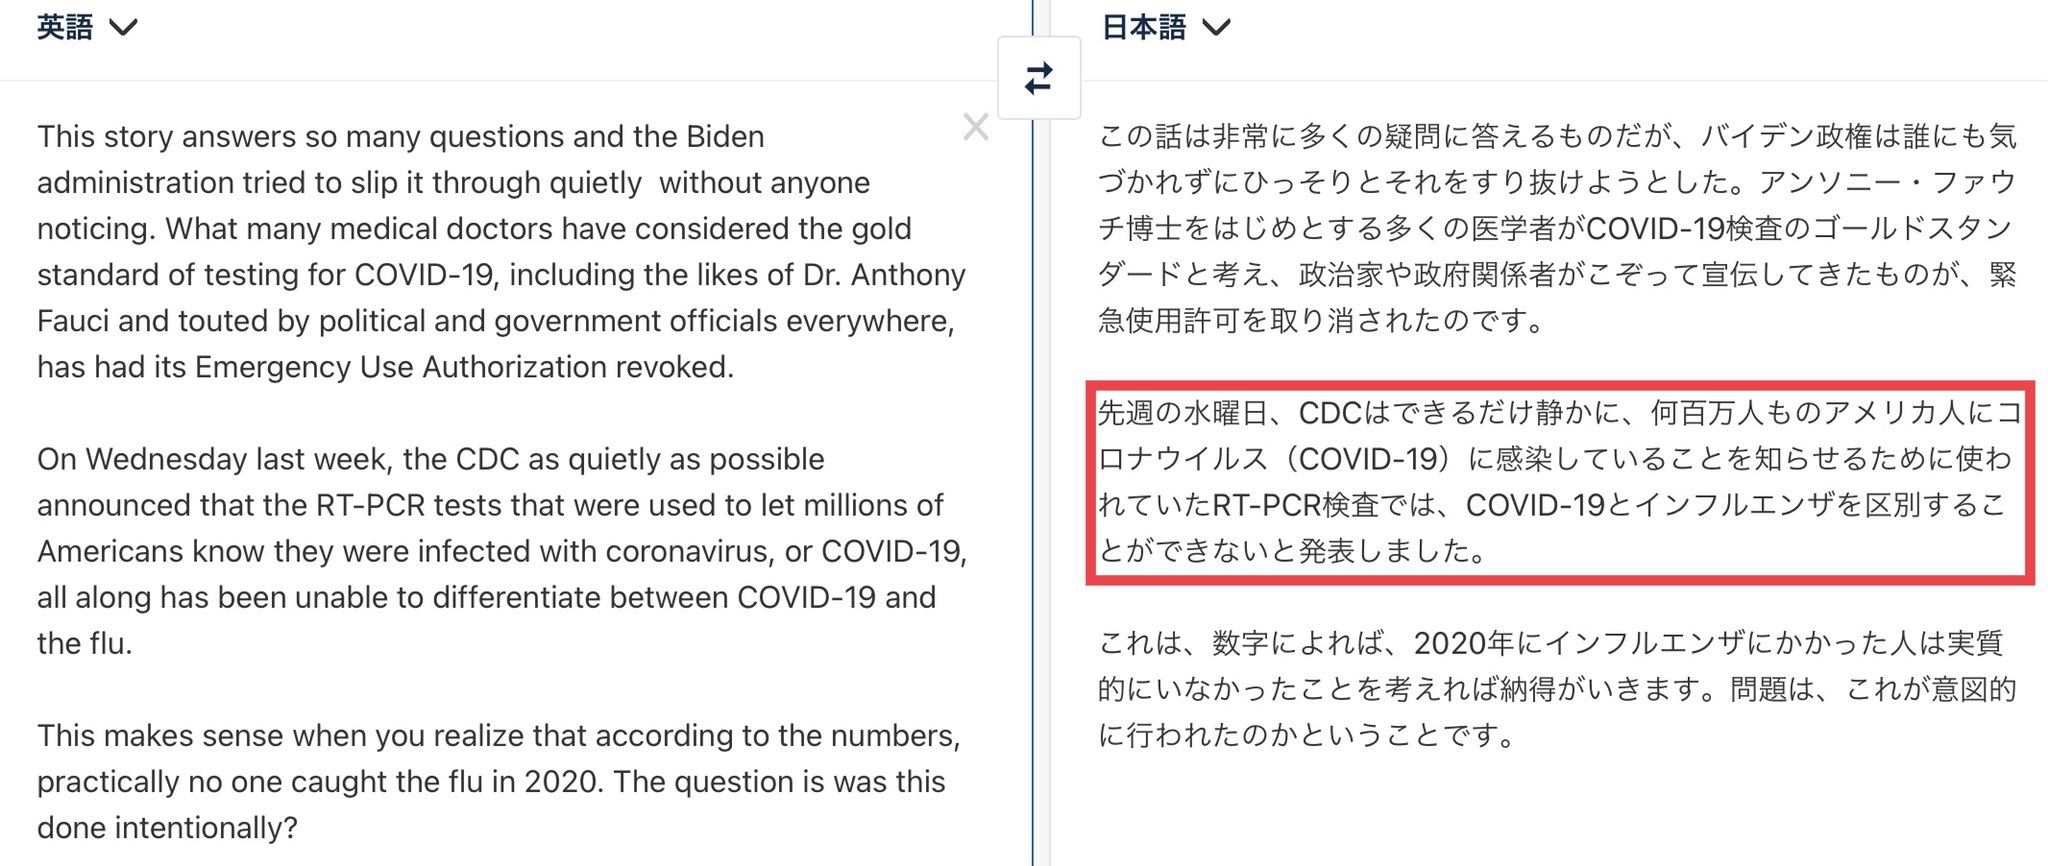 日本 心太郎 記事中の訳です Cdcがコロナとインフルエンザの見分けが付かないと 発表 Pcr検査はポンコツ検査と認めた